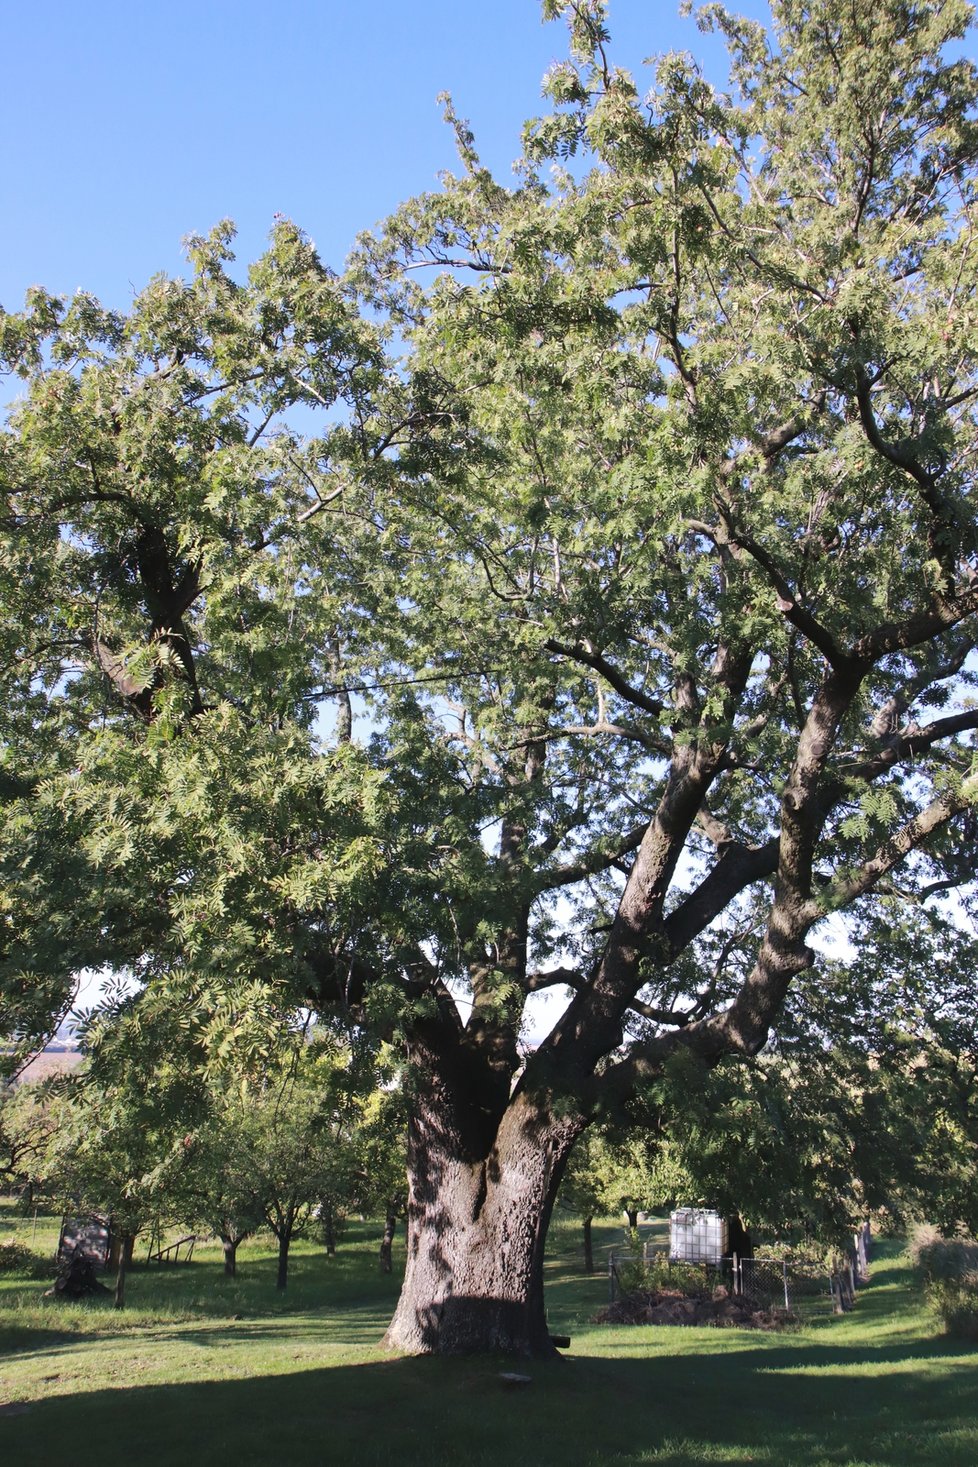 Nejstarší oskoruší v České republice je Adamcova, jde o památný strom starý více než 400 let, roste na kopci Žerotín poblíž Strážnice. Plodí dosud ovoce. Podle některých zdrojů jde o nejkošatější oskoruši v Evropě.